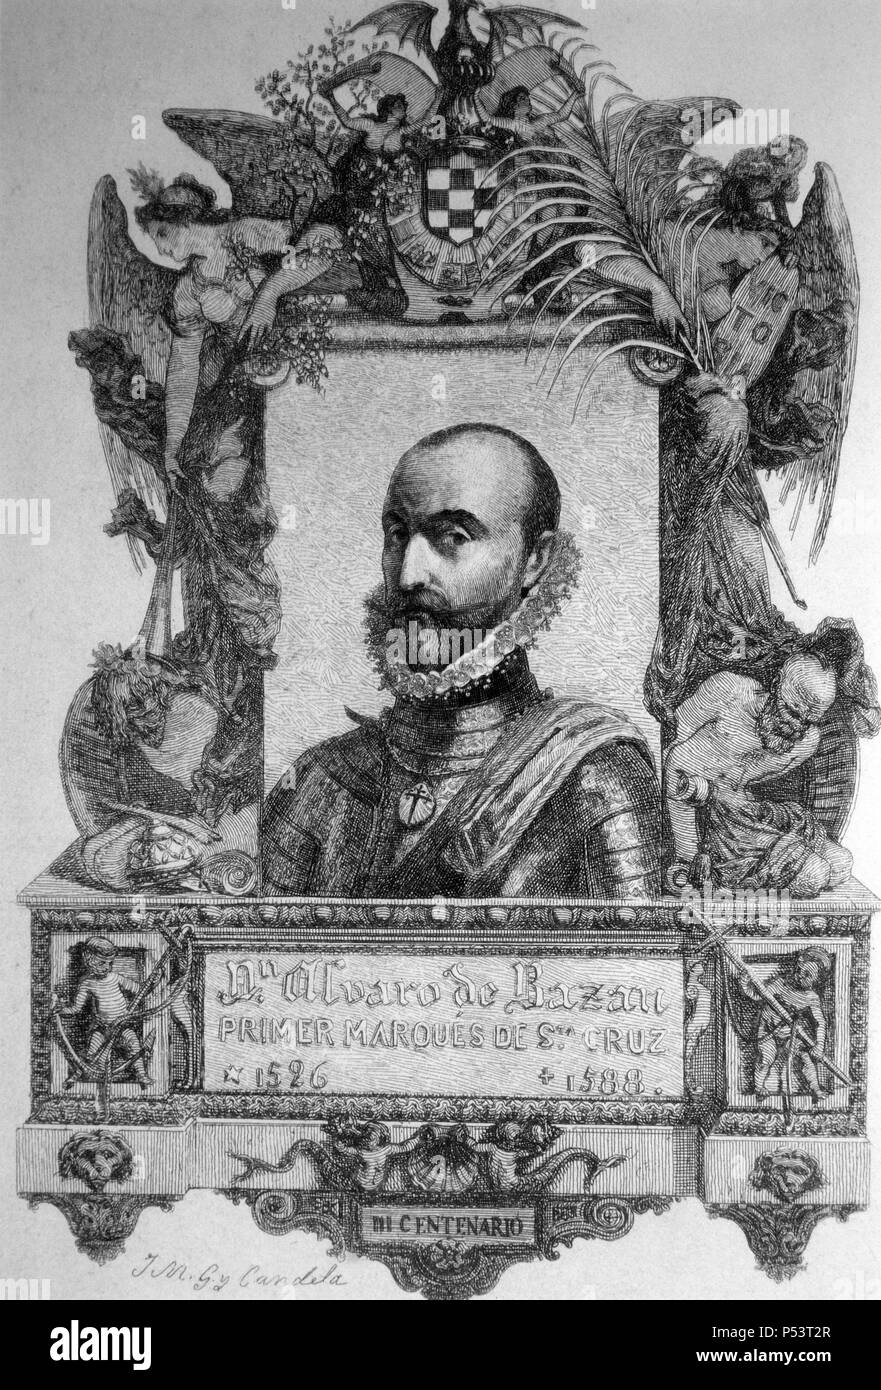 Álvaro de Bazán (1526-1588). Primer marqués de Santa Cruz. Marino español. La gravure de 1888. Banque D'Images